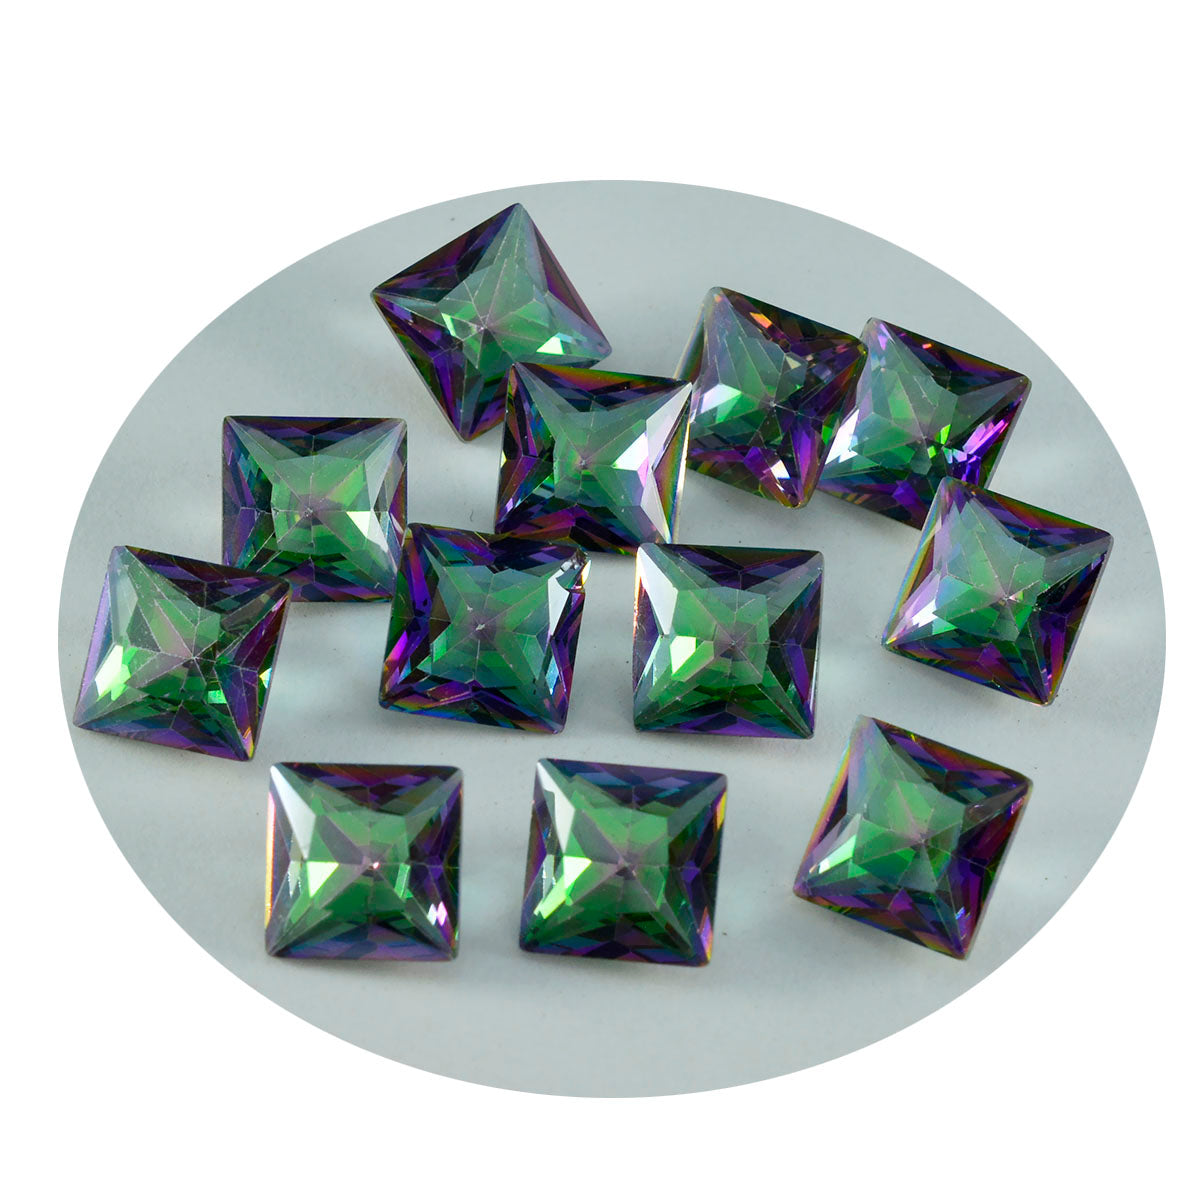 riyogems 1 шт. разноцветный мистический кварц ограненный 10x10 мм квадратной формы, красивые качественные драгоценные камни